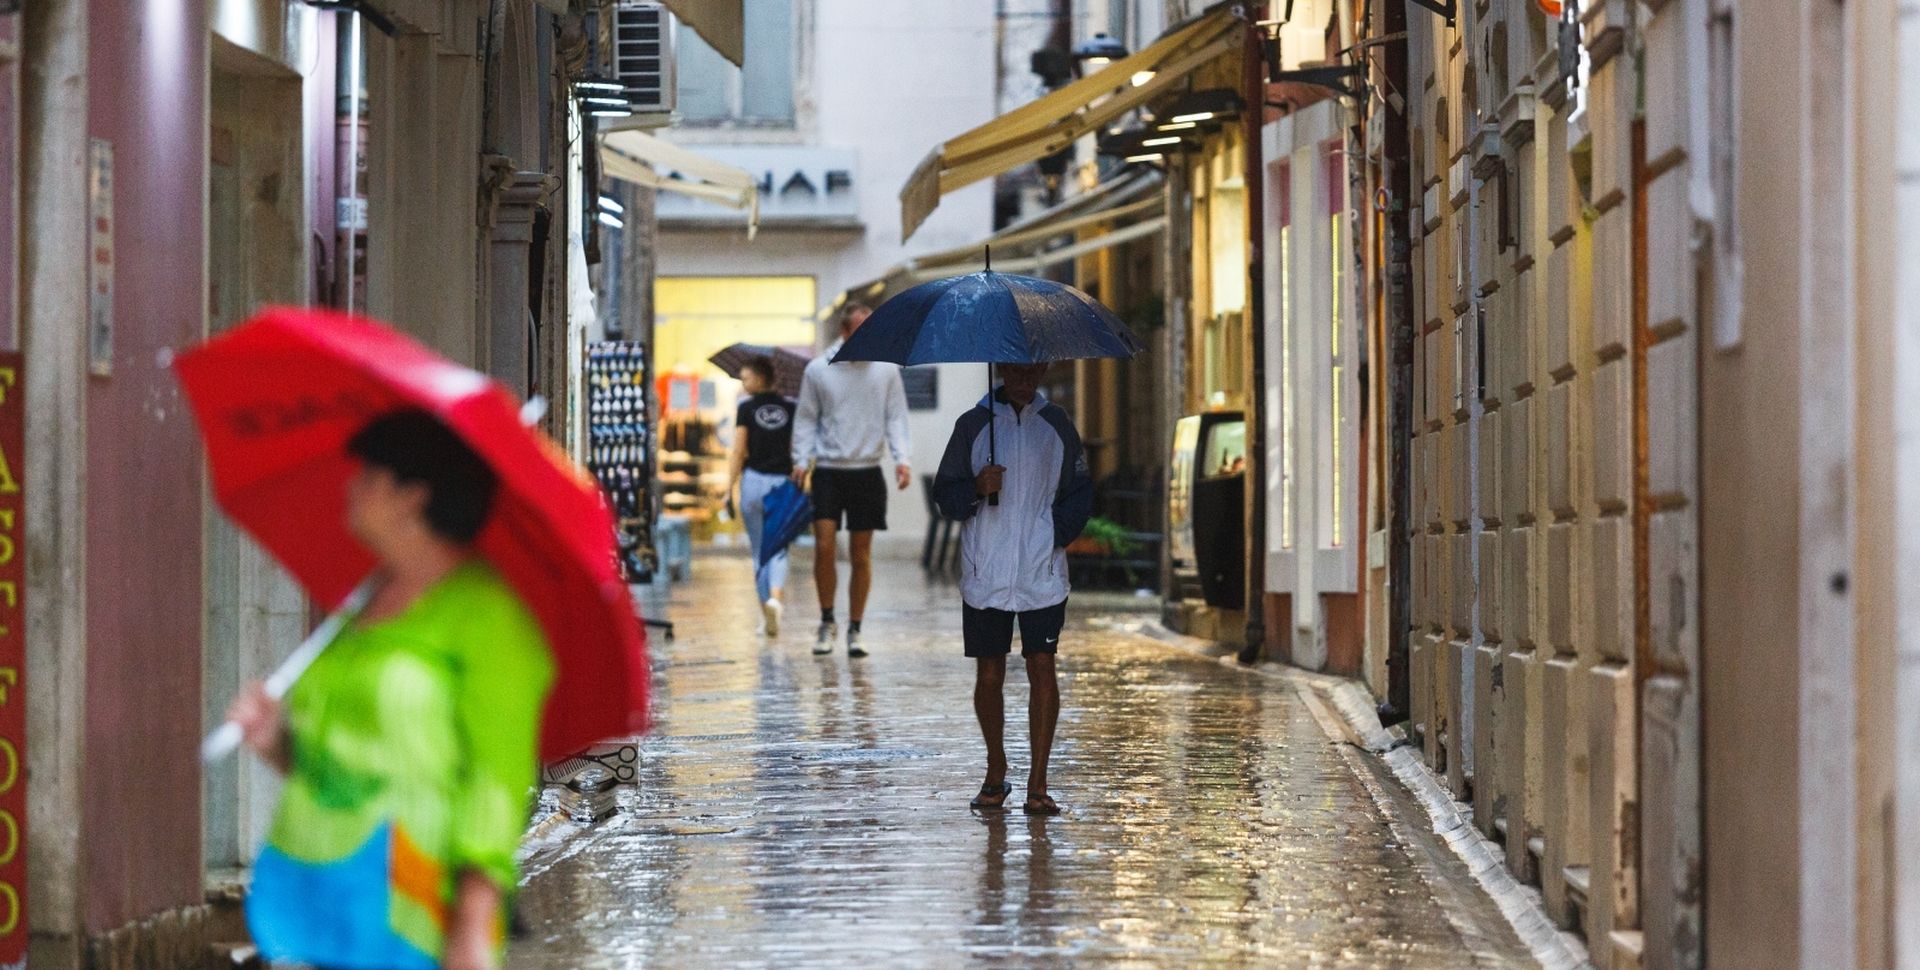 31.08.2020., Zadar - Promjena vremena koja je donijela kisu i zahladjenje ispraznila je ulice Zadra.  Photo: Marko Dimic/PIXSELL